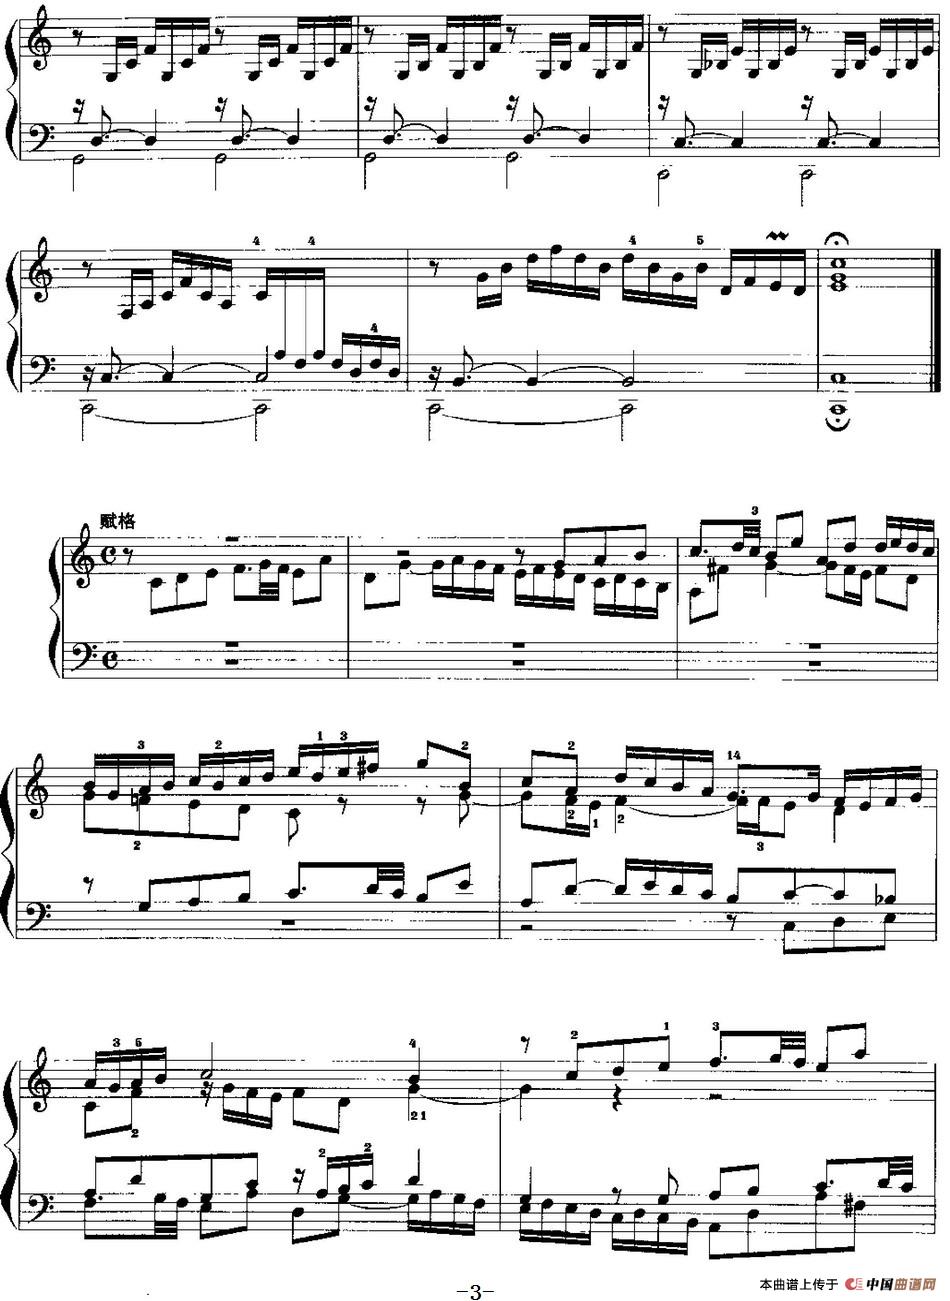 手风琴复调作品：C大调前奏曲与赋格